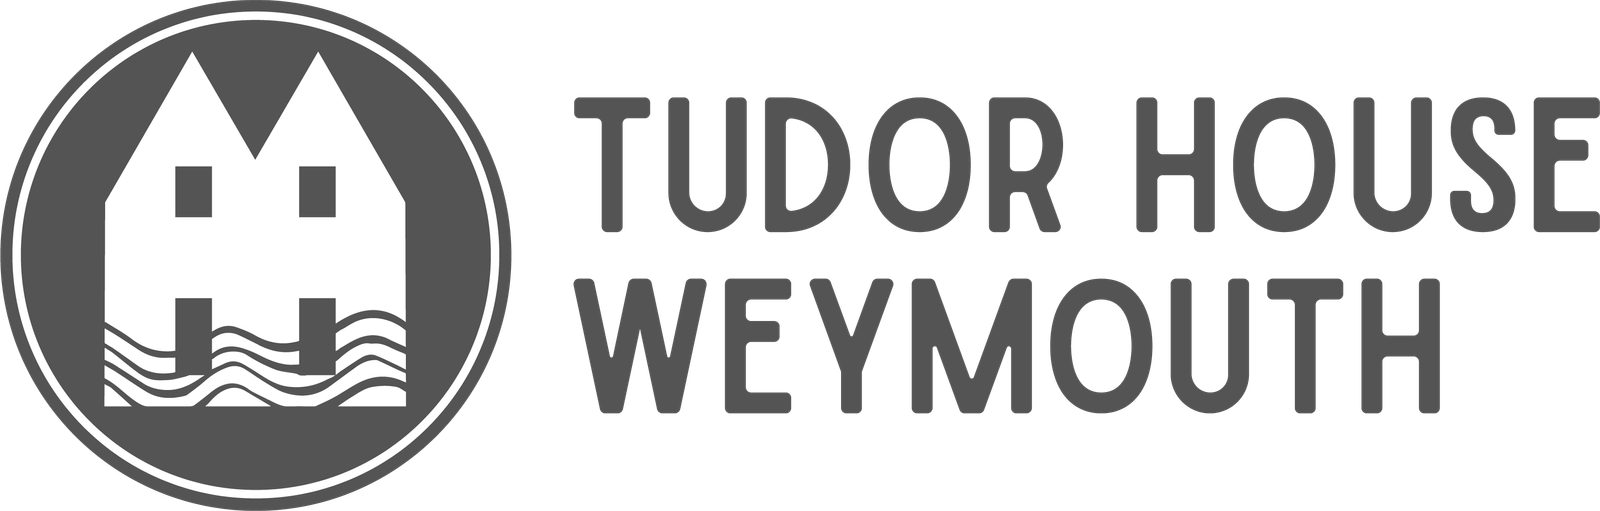 Tudor House Weymouth